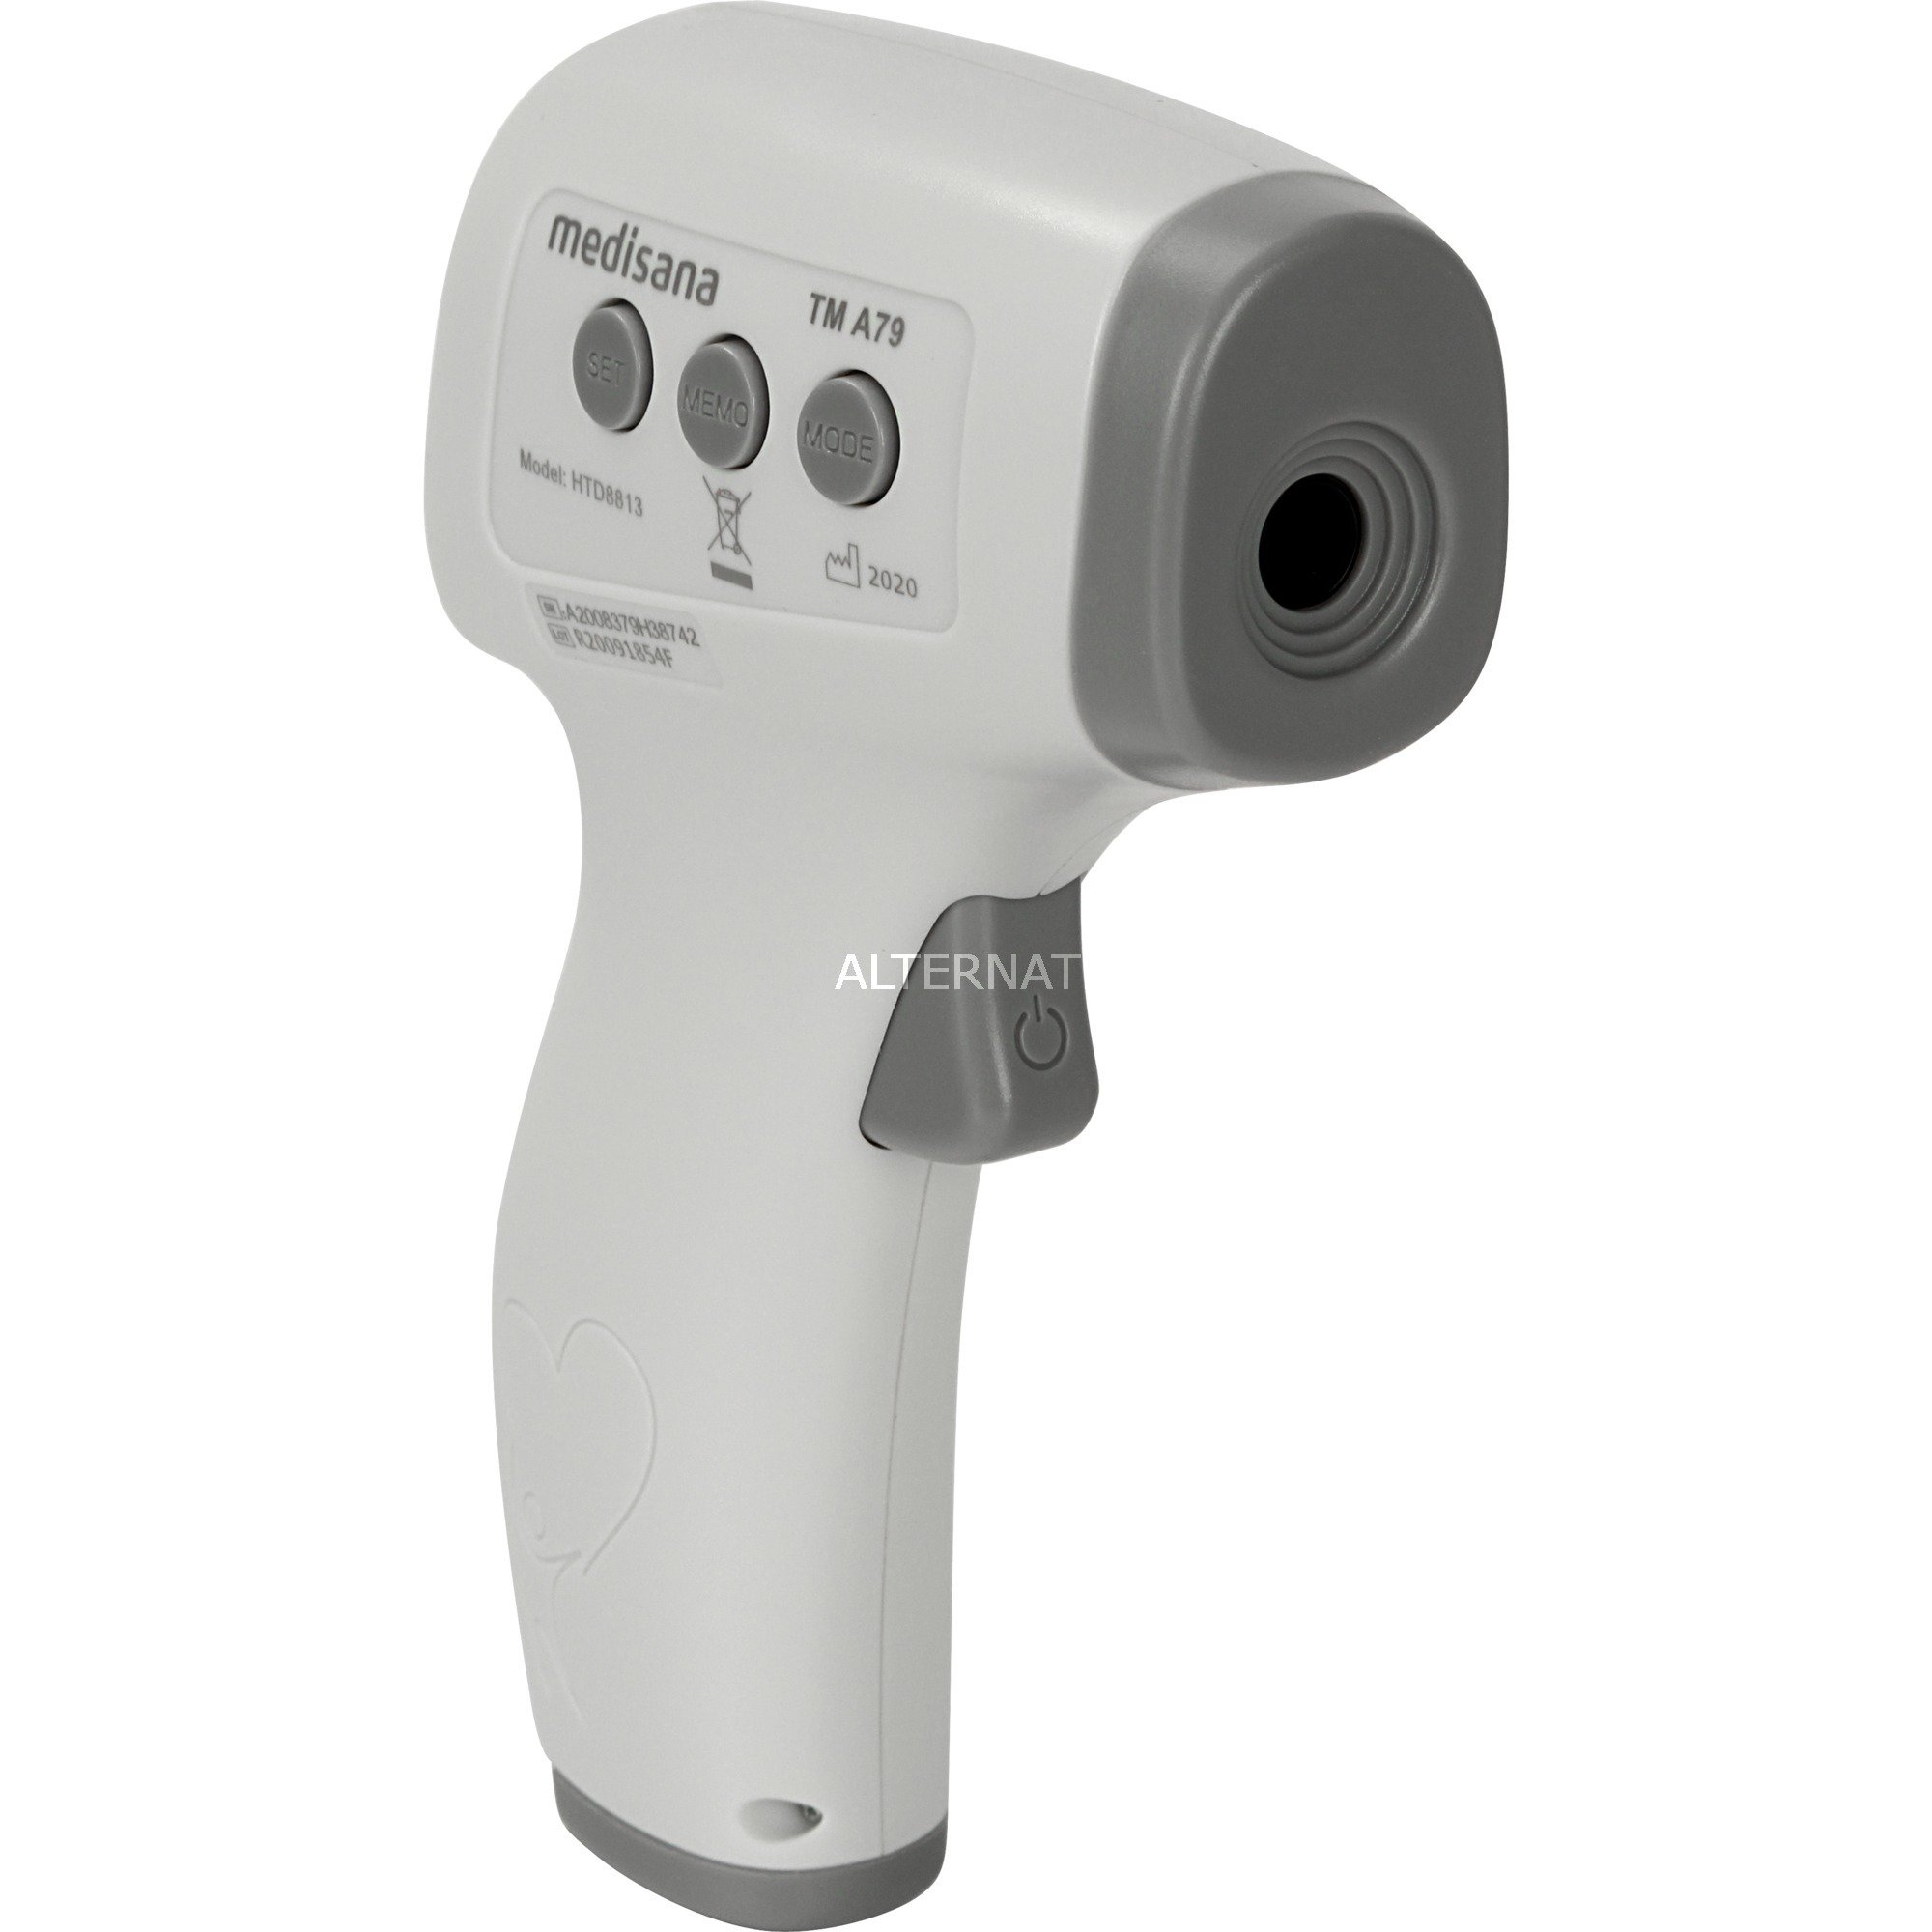 Image of Alternate - Infrarot-Körperthermometer TMA79, Fieberthermometer online einkaufen bei Alternate